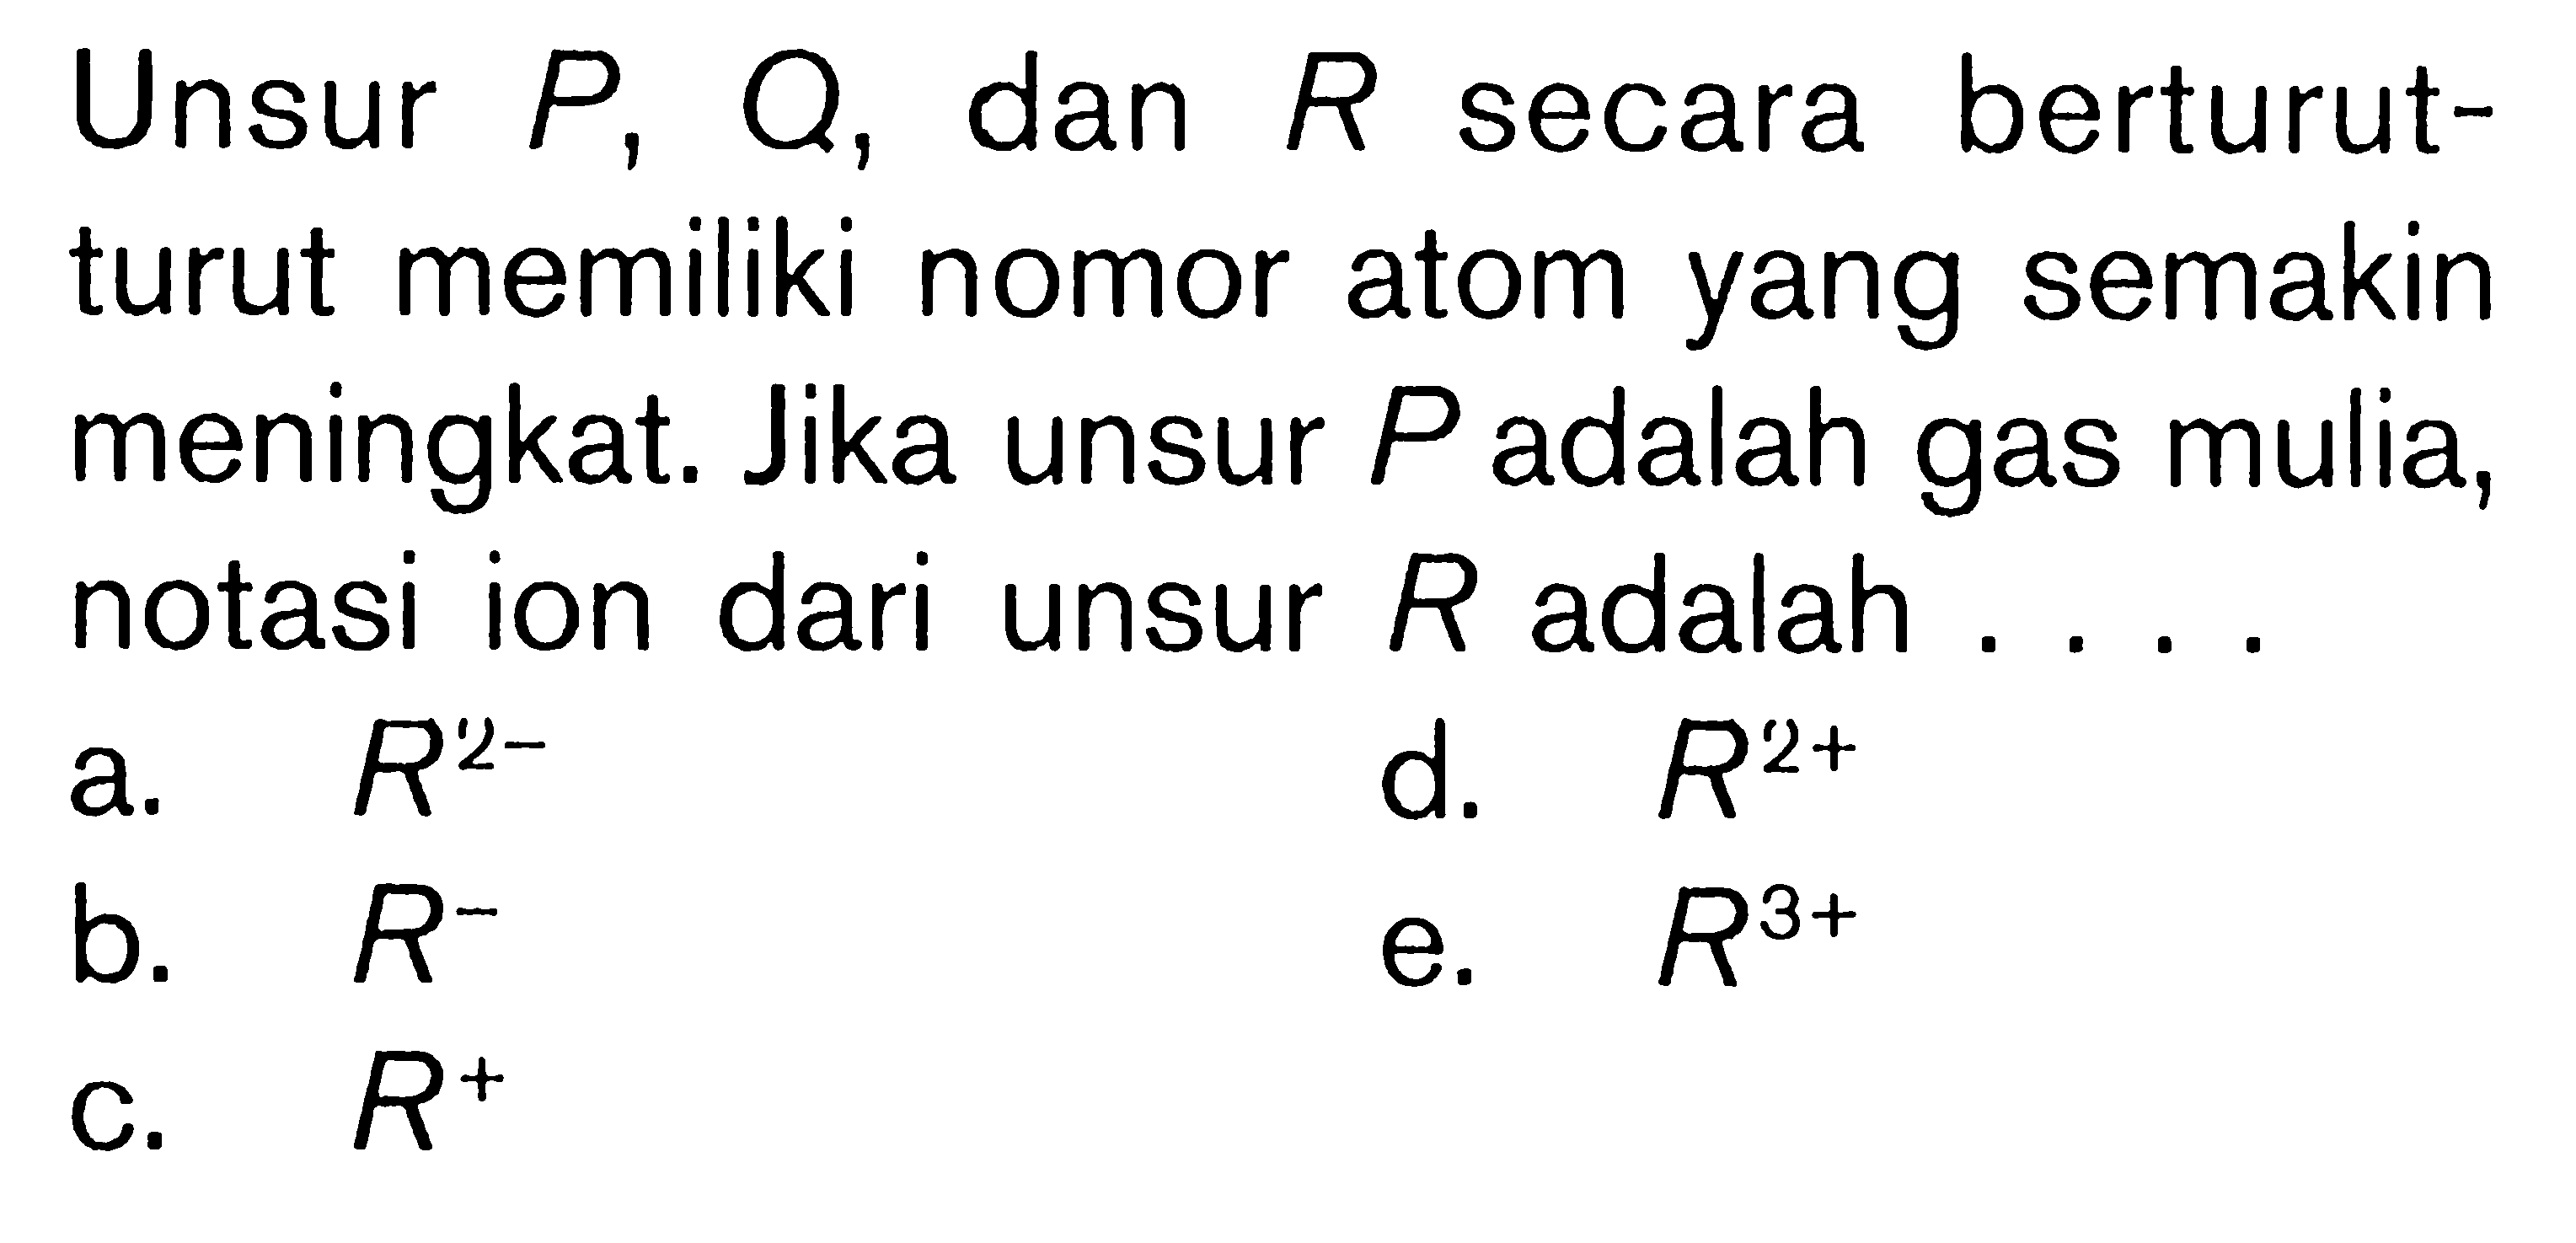 Unsur P Q, dan R secara berturut-turut memiliki nomor atom yang semakin meningkat. Jika unsur P adalah gas mulia, notasi ion dari unsur R adalah ....